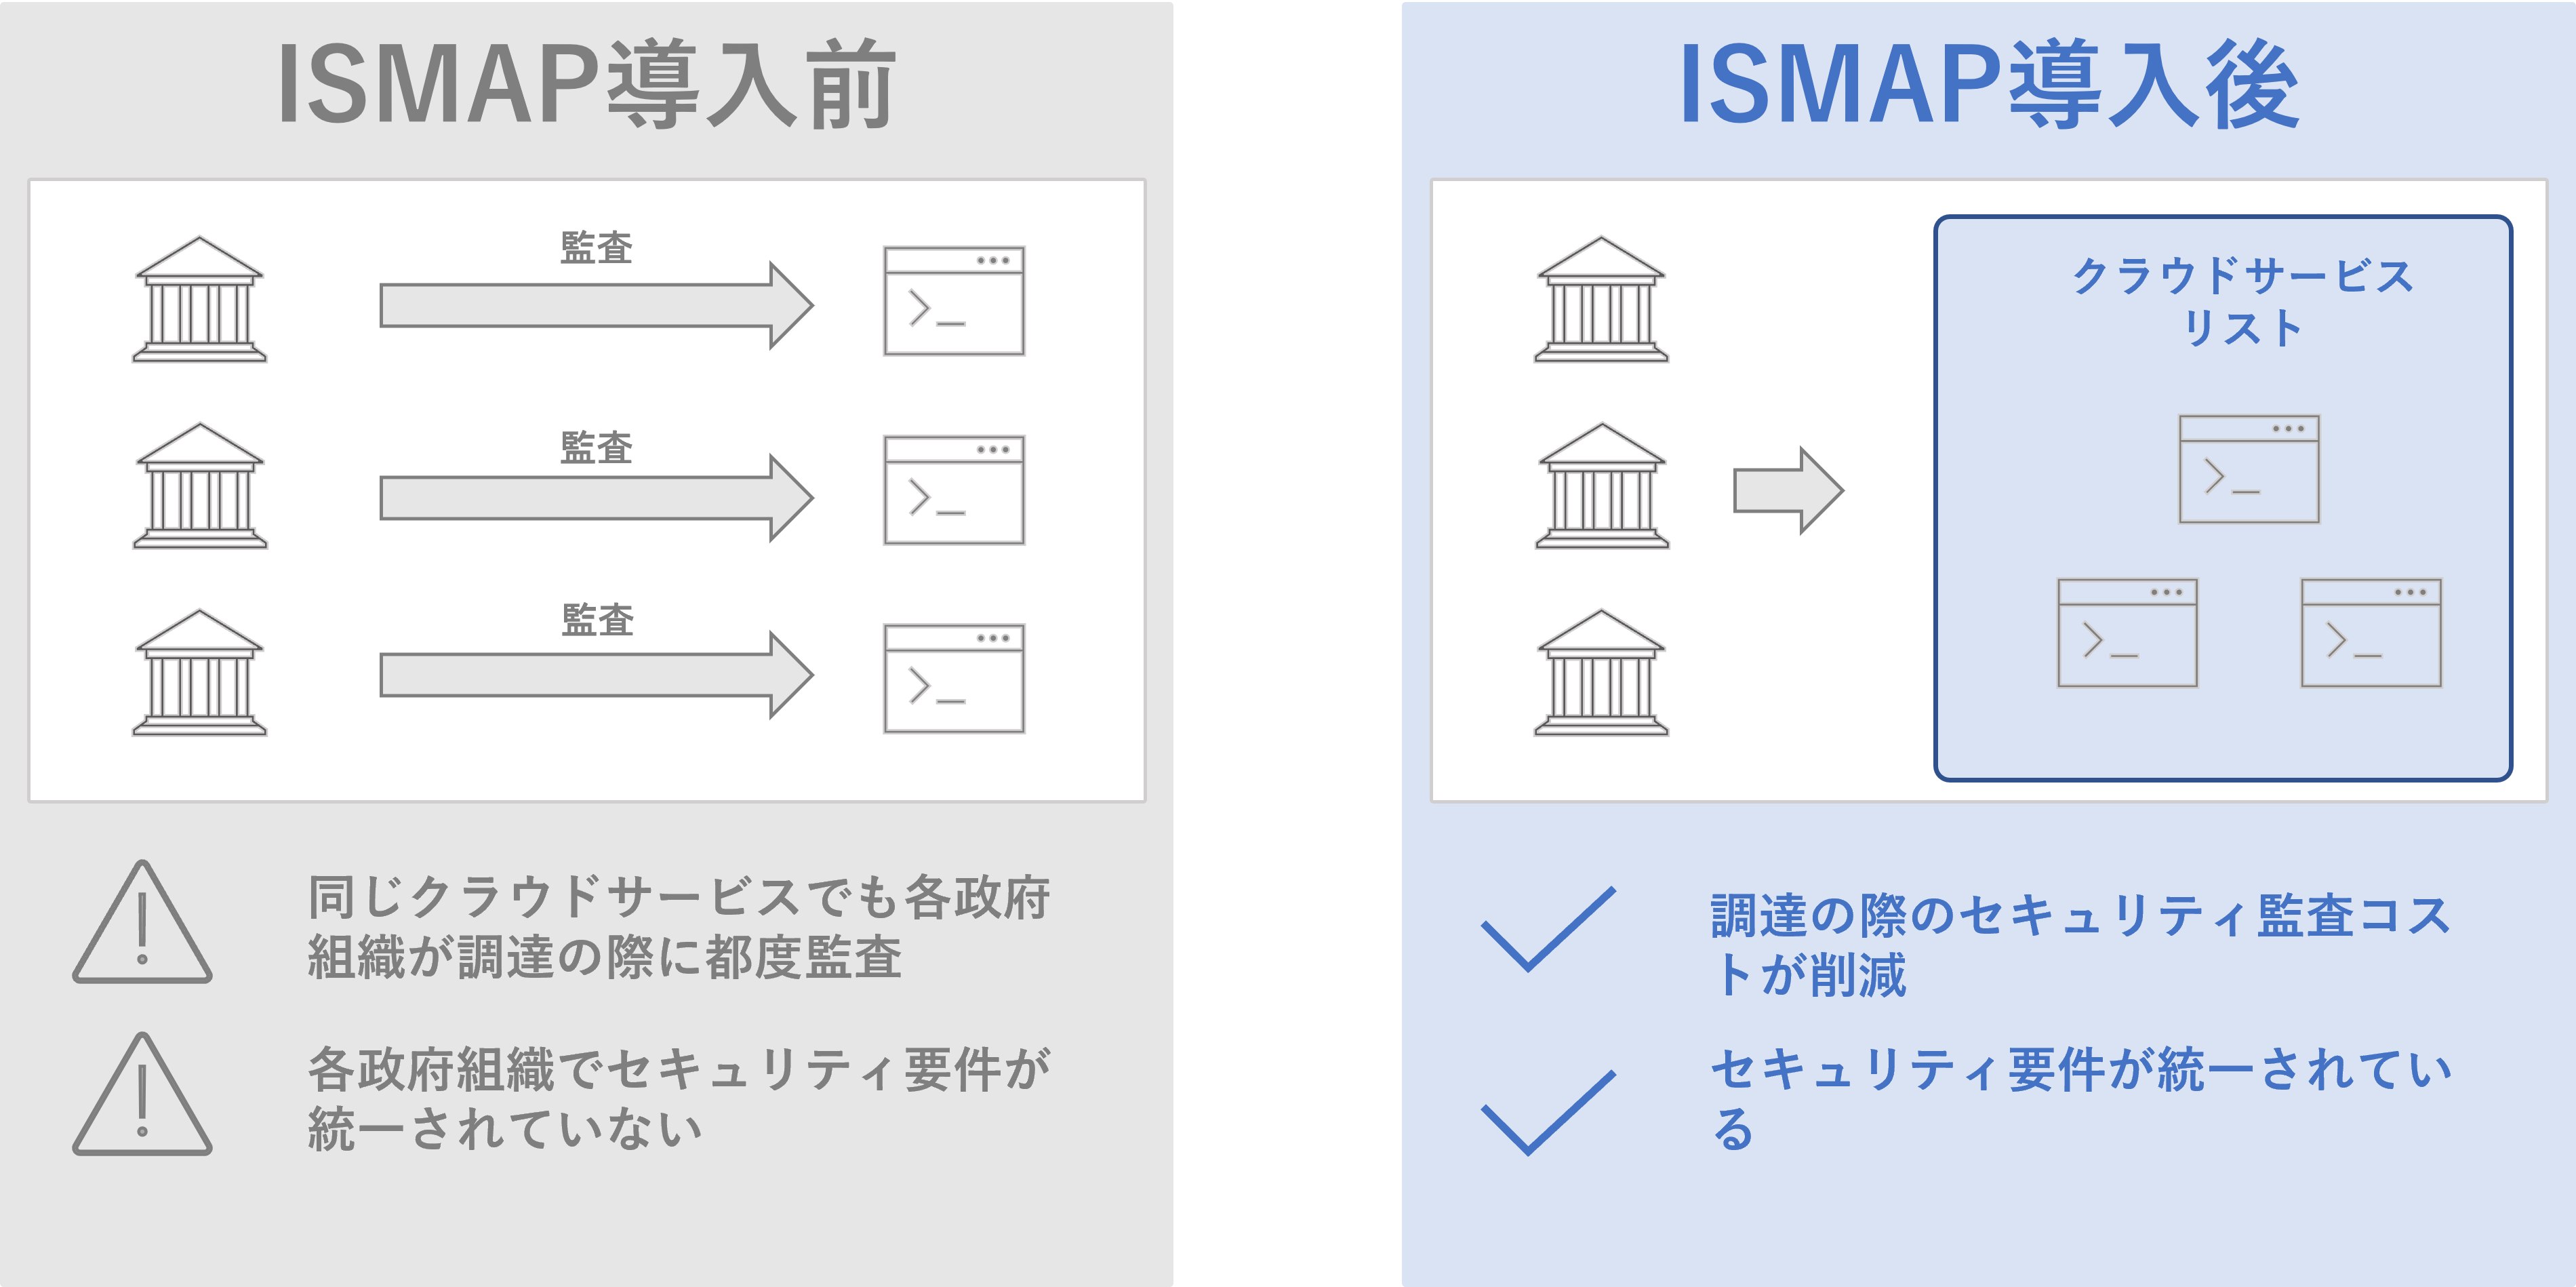 ISMAP導入前と導入後の違い